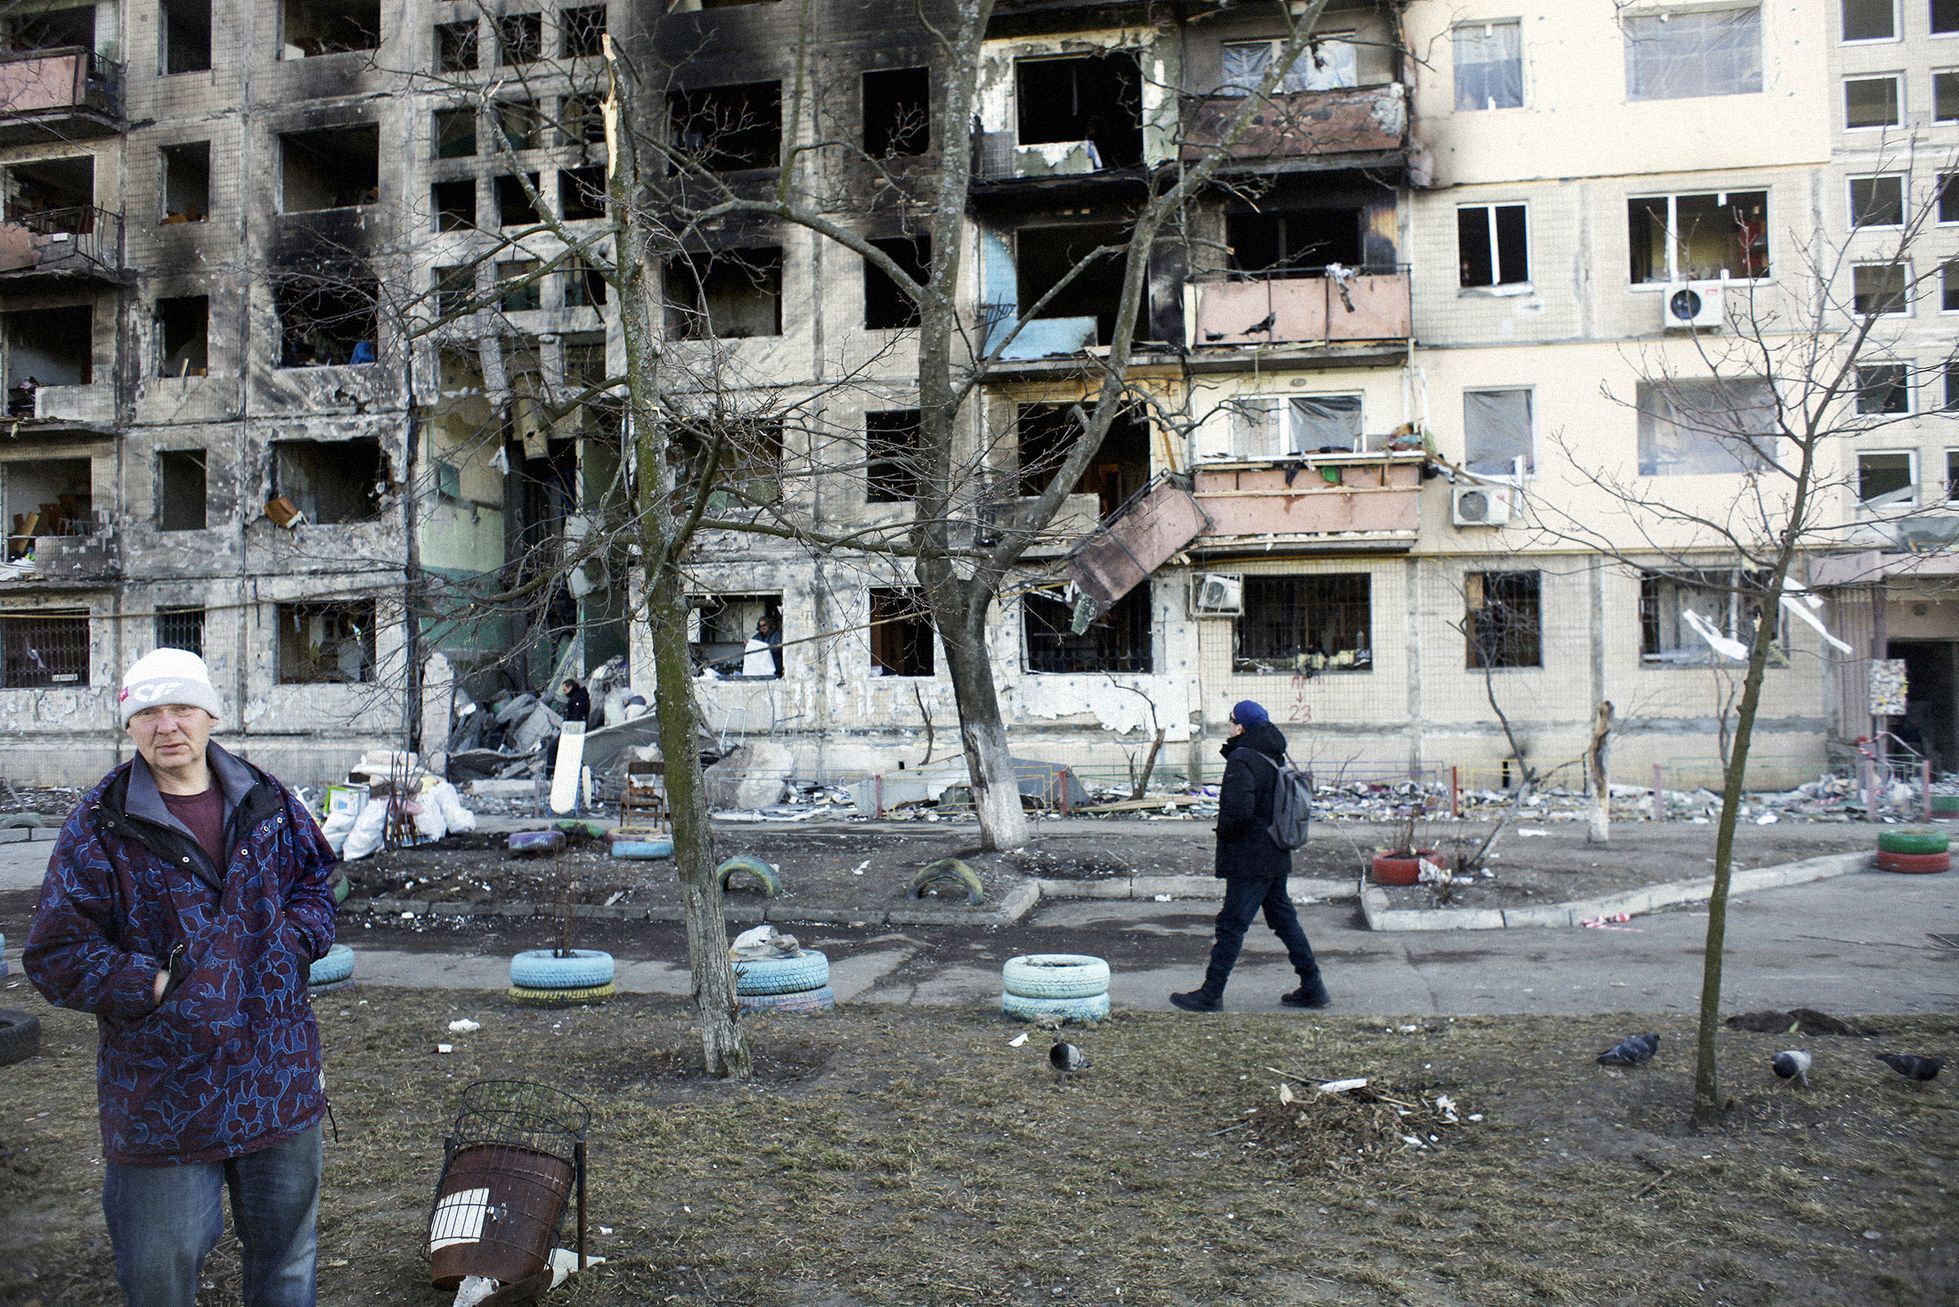 Foto / Martin Kuba / 15. 3. 2022 / Kyjev / Ukrajina / Bombardování, trosky, ostřelování, město, civilní oblast / Boje na Ukrajině 2022